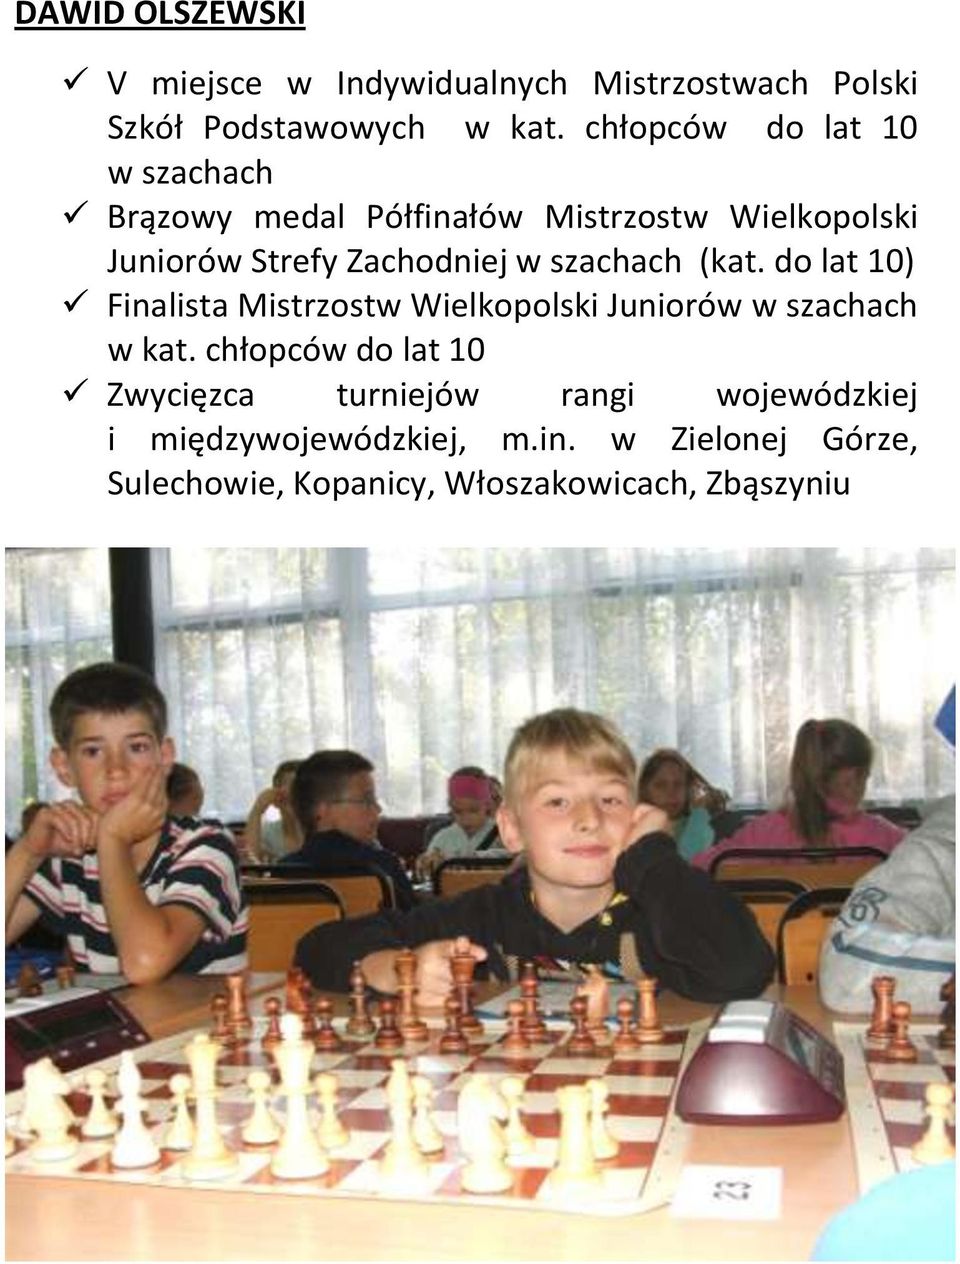 szachach (kat. do lat 10) Finalista Mistrzostw Wielkopolski Juniorów w szachach w kat.